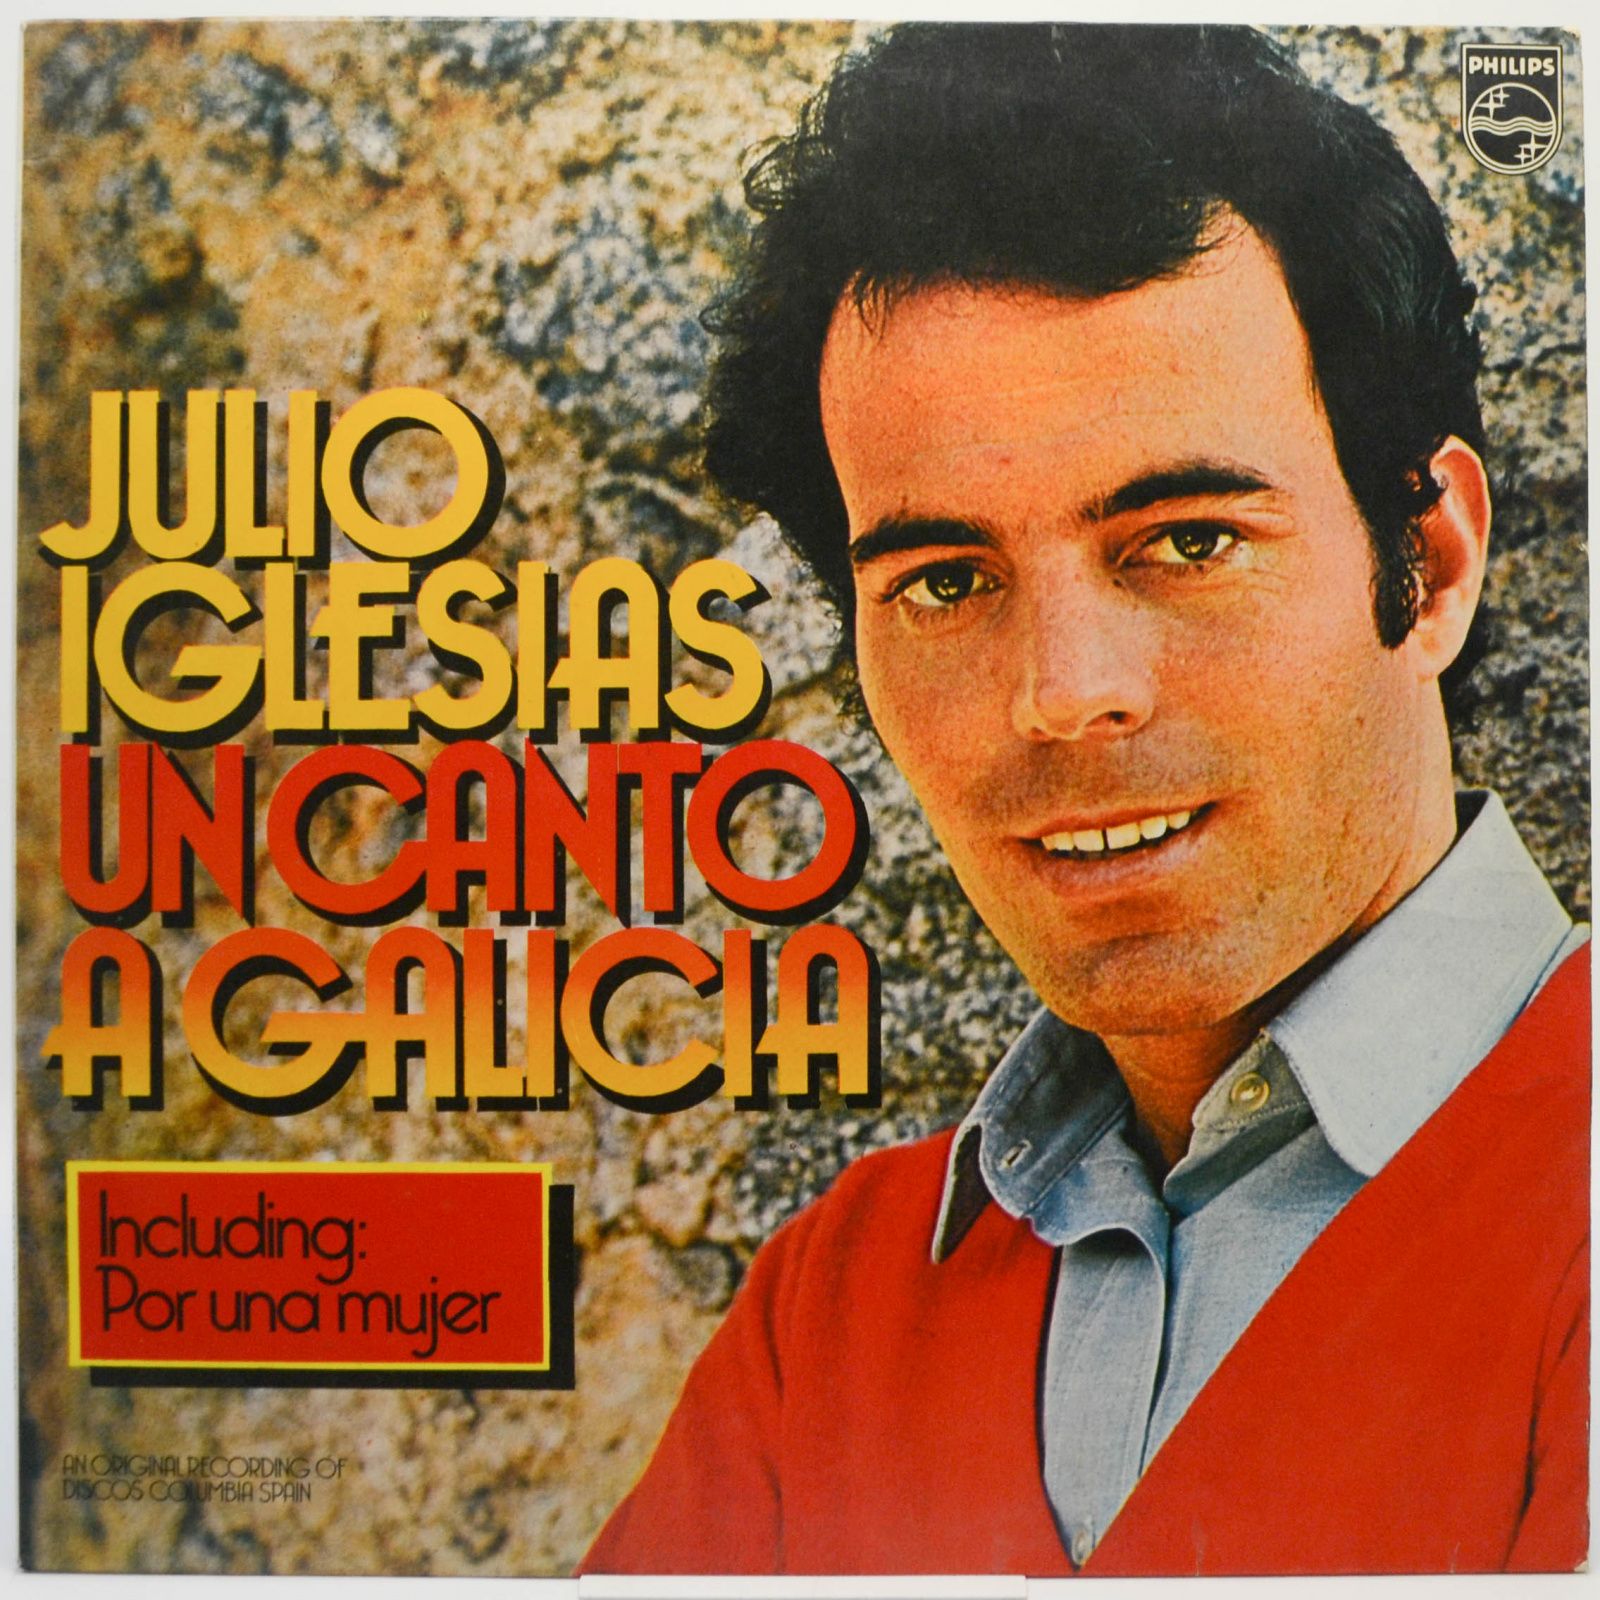 Un Canto A Galicia, 1972